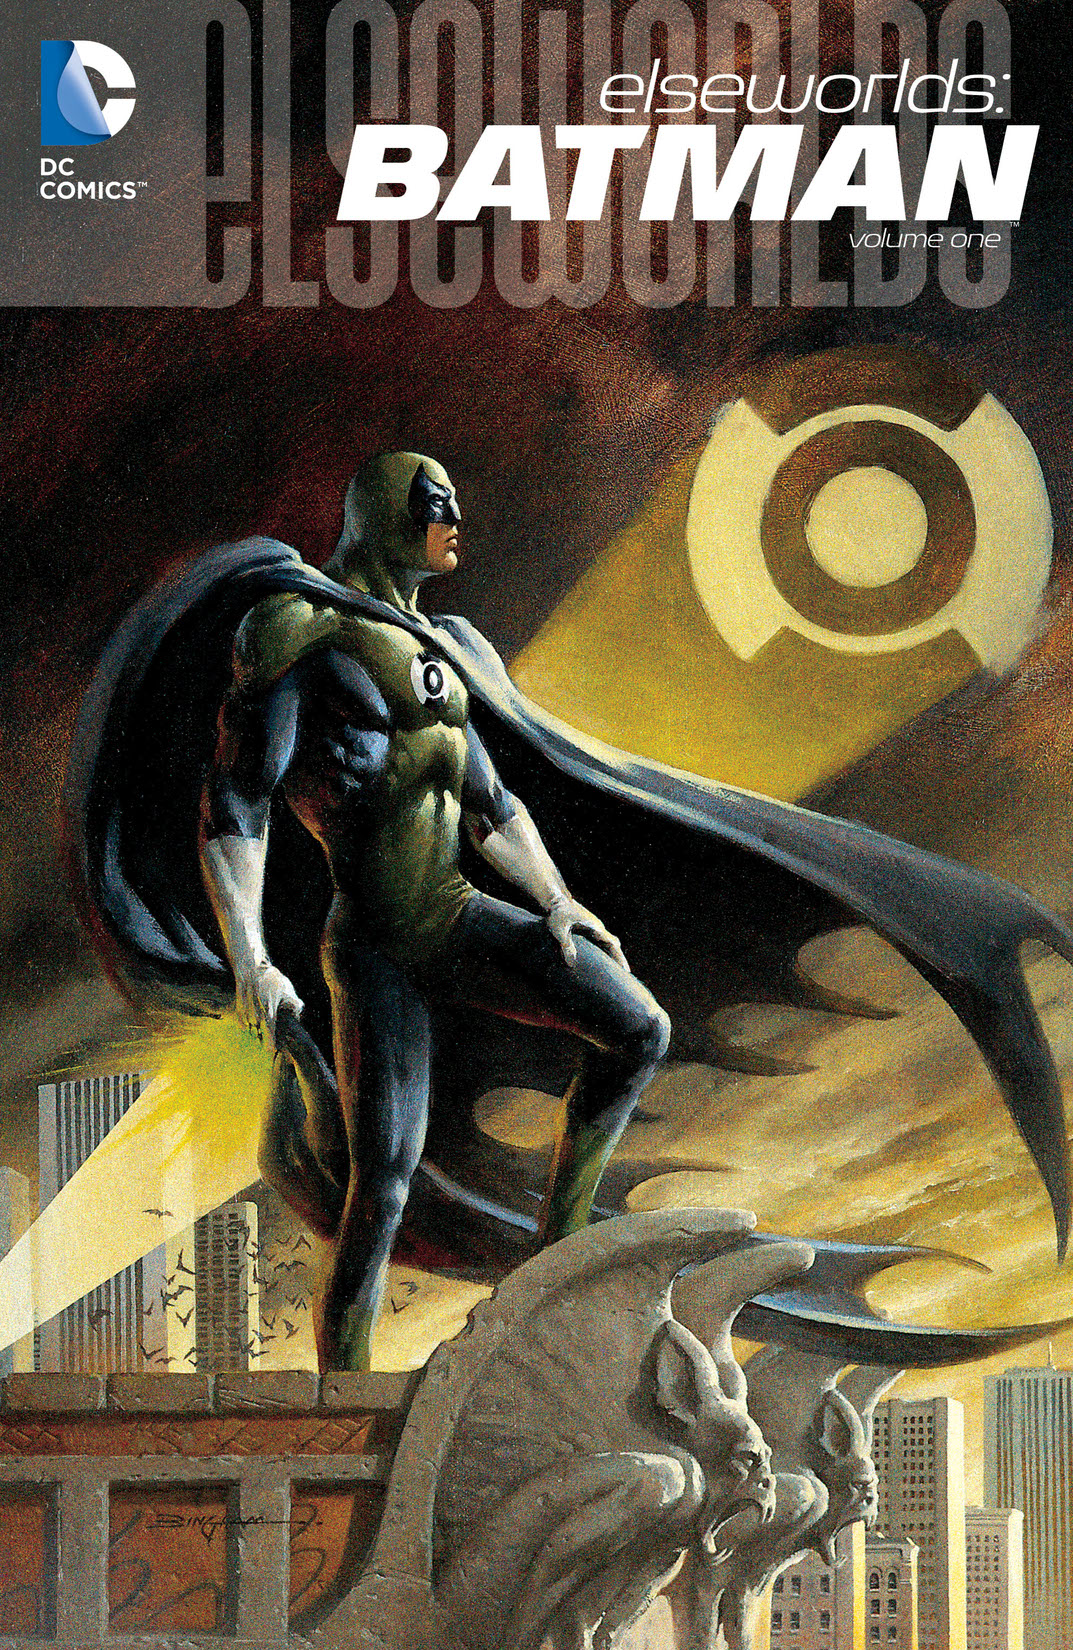 Elseworlds: Batman Vol. 1 preview images